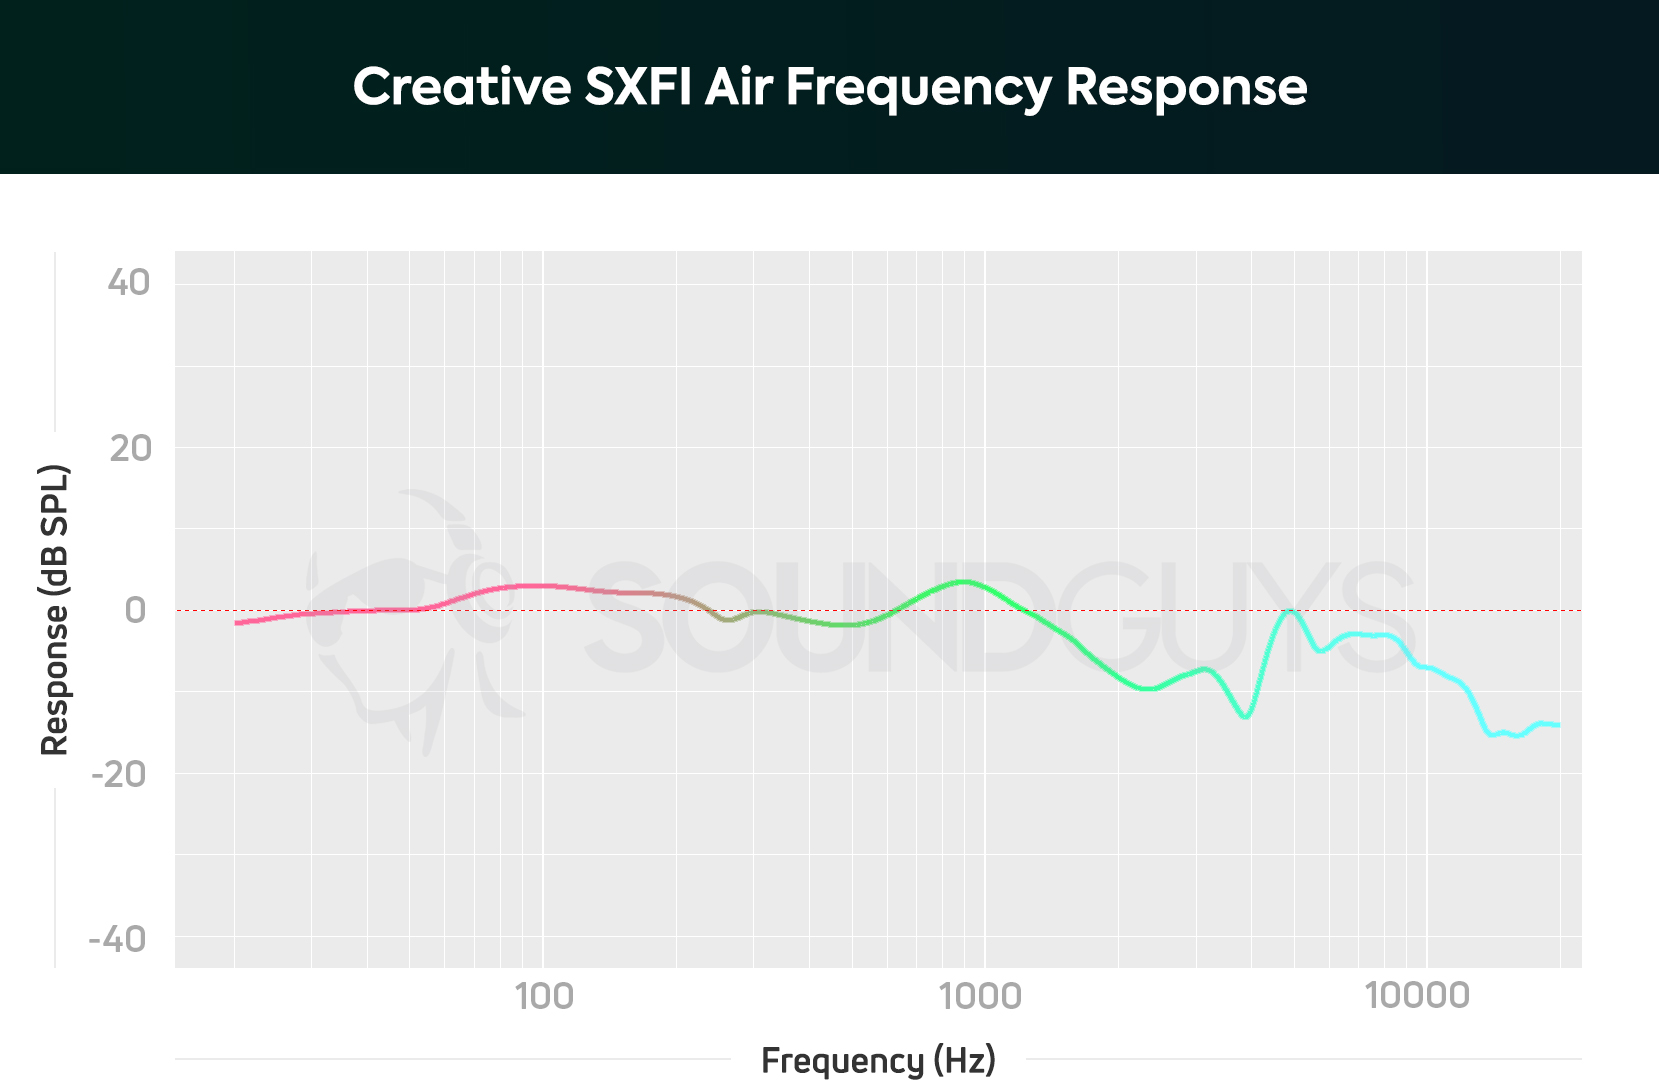 Creative SXFI Air frequency response chart.